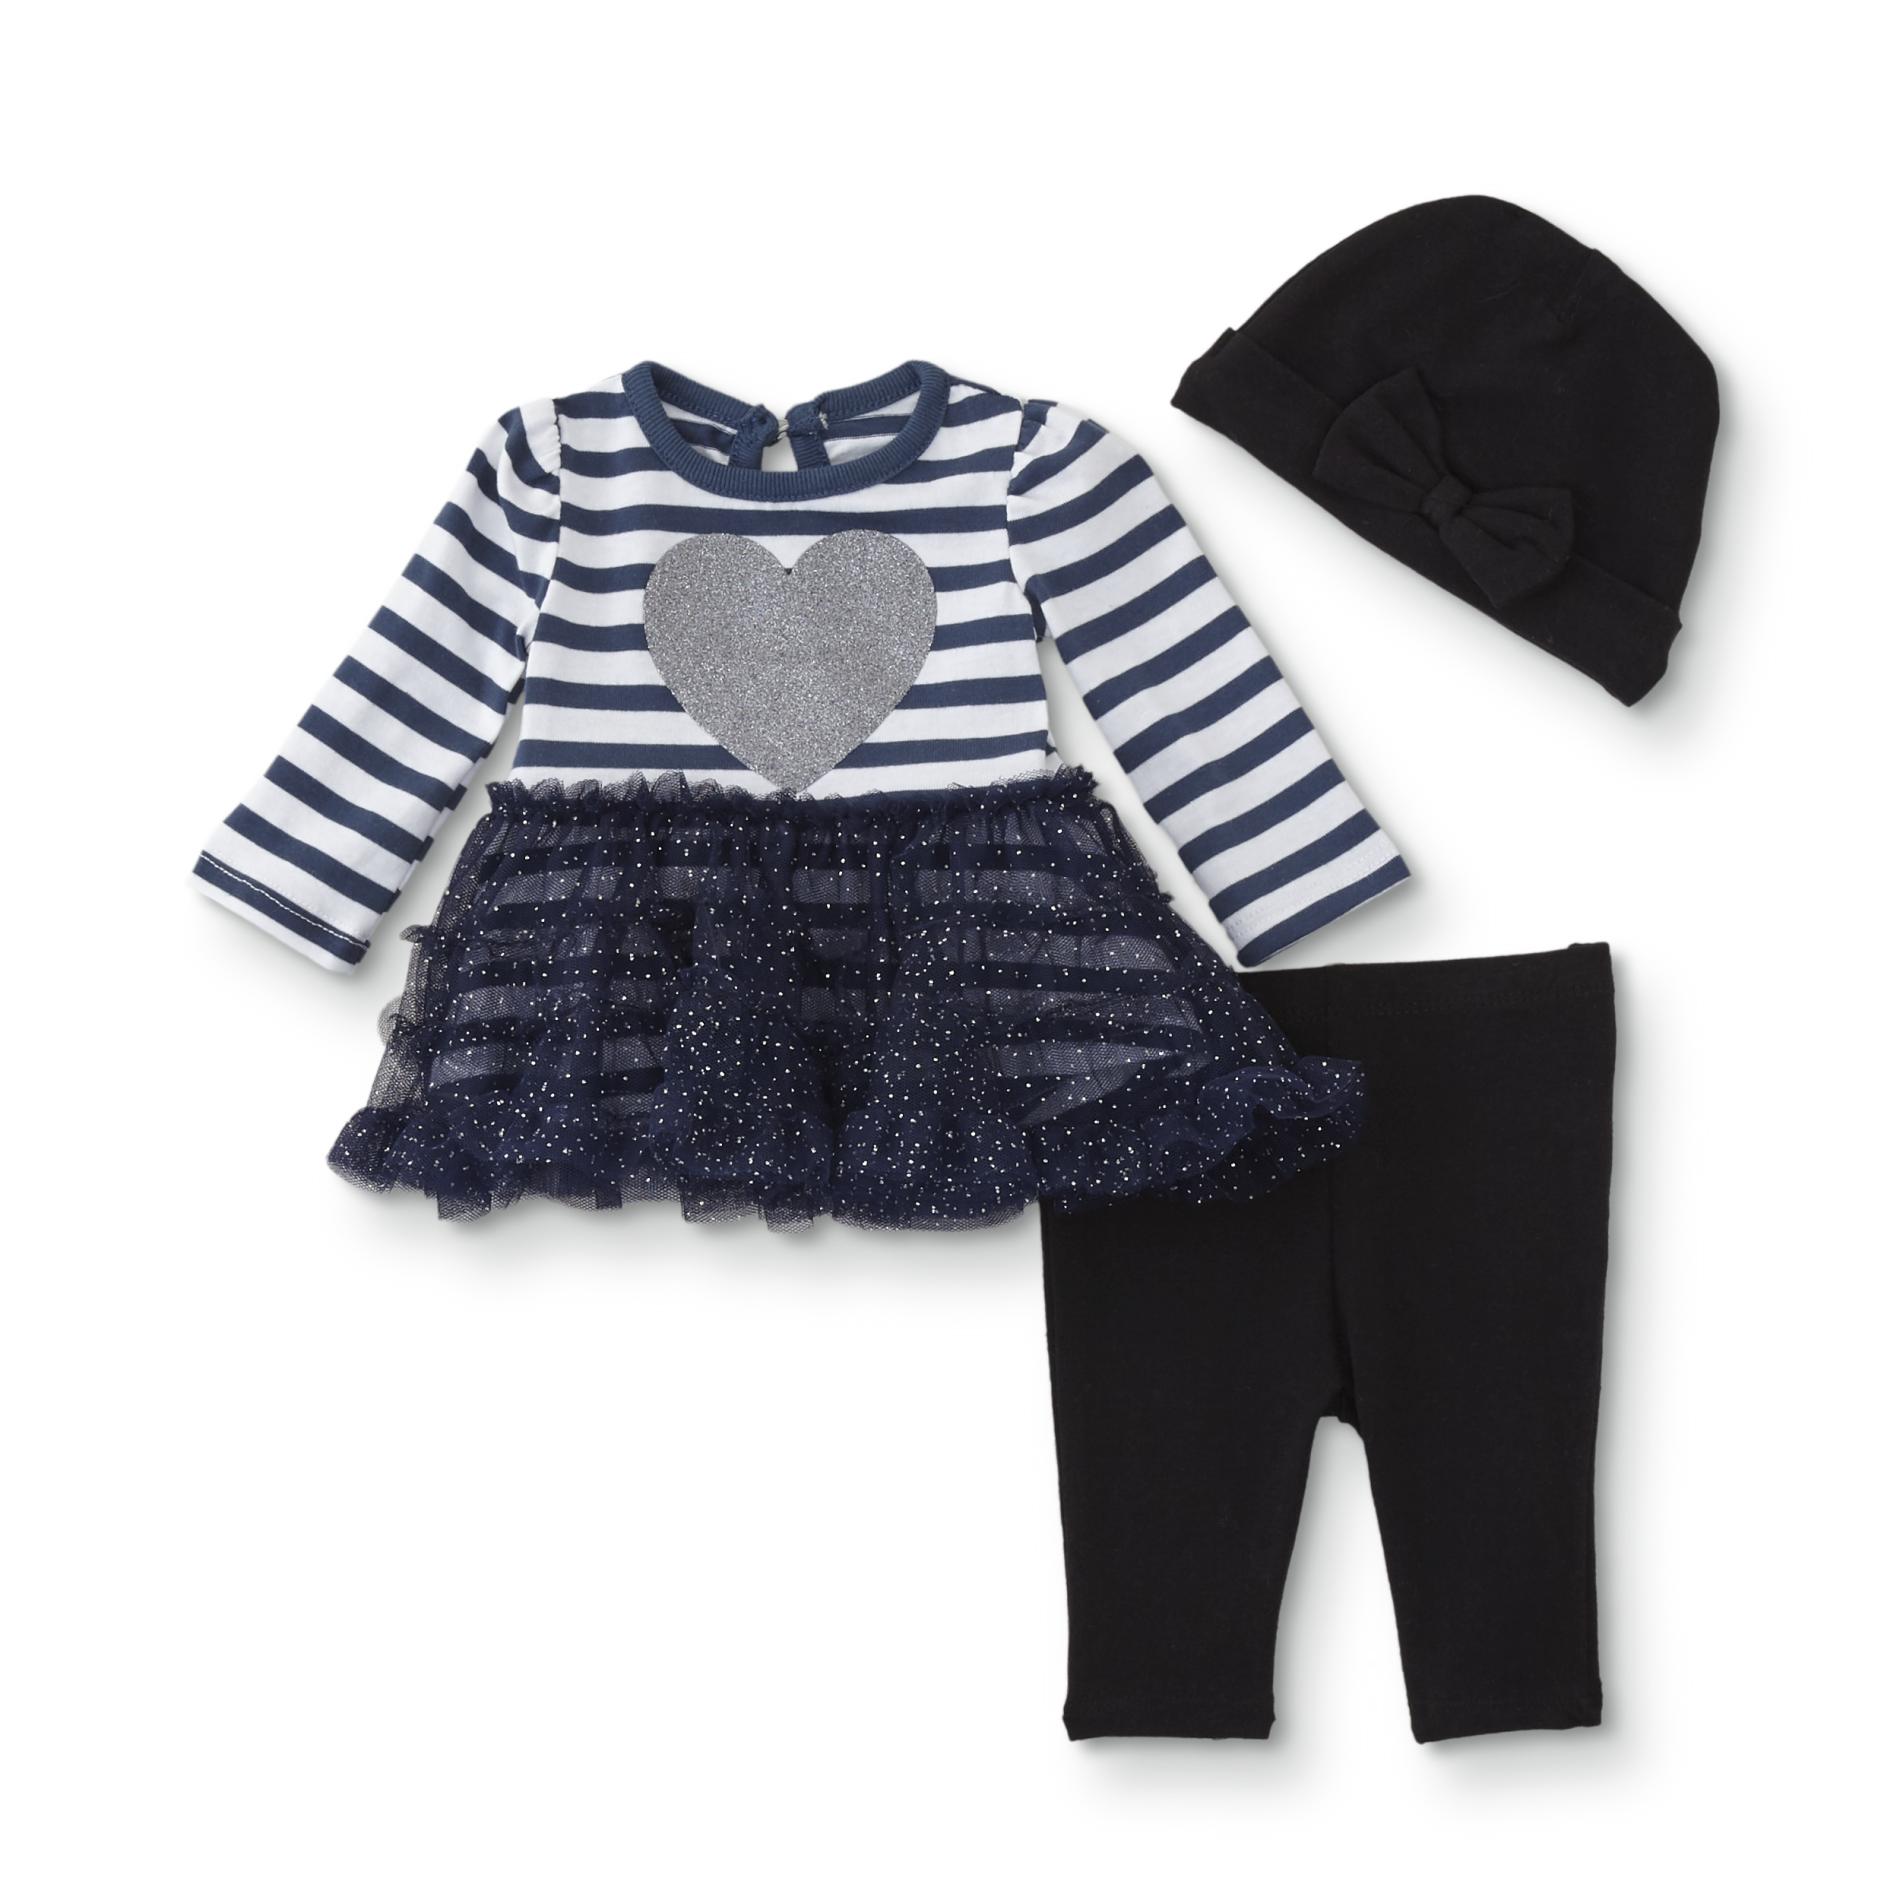 Little Wonders Infant Girls' Tutu Dress, Leggings & Cap - Striped/Heart